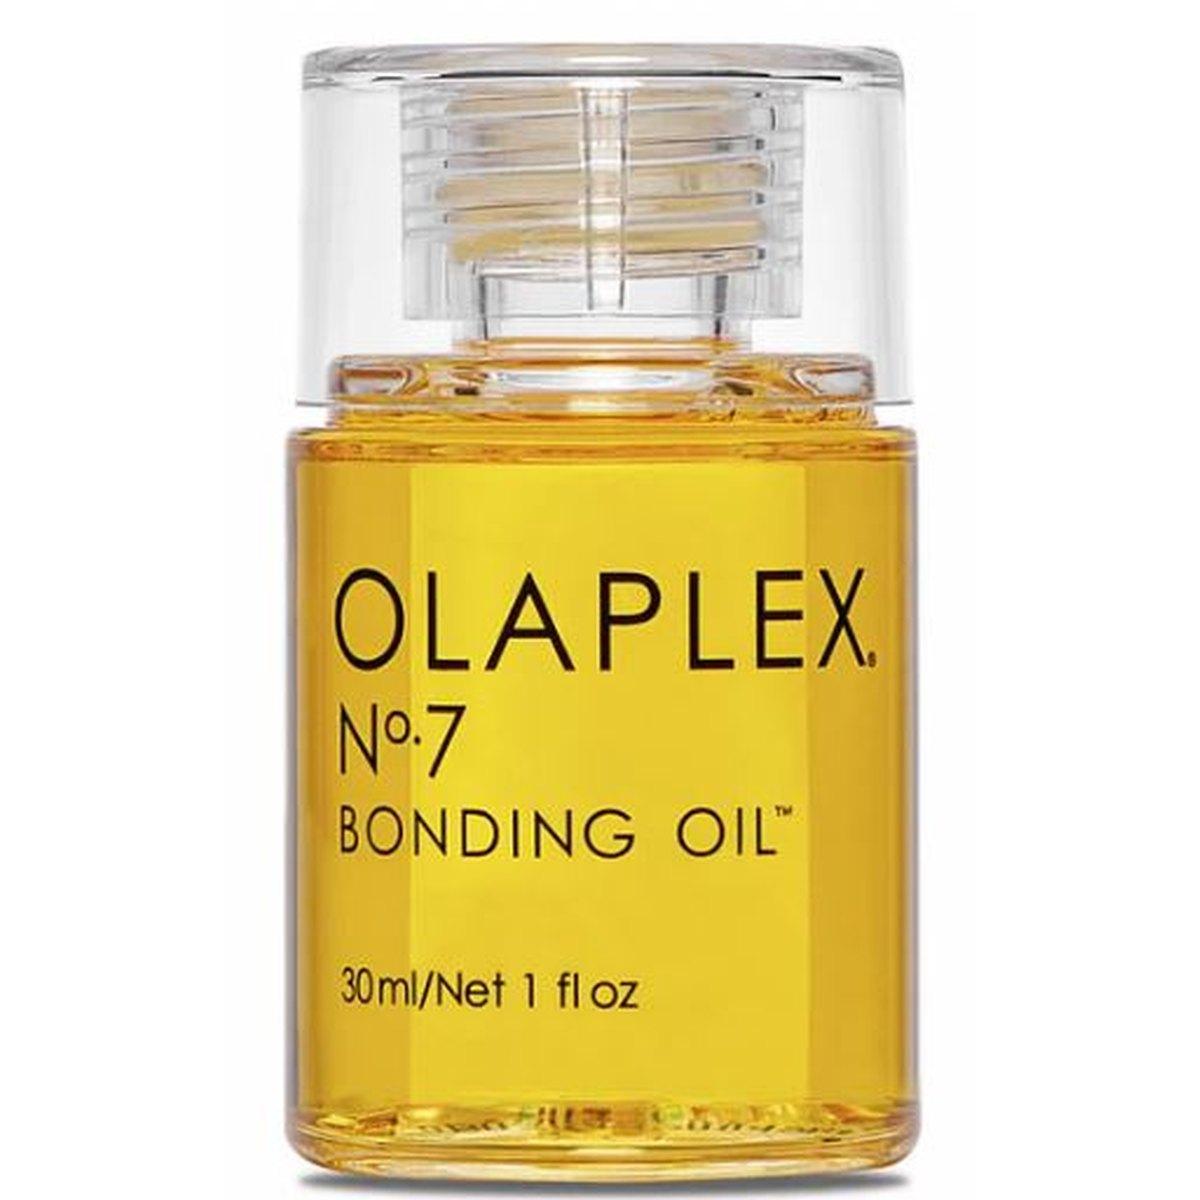 Olaplex 7 号债券油 30ml